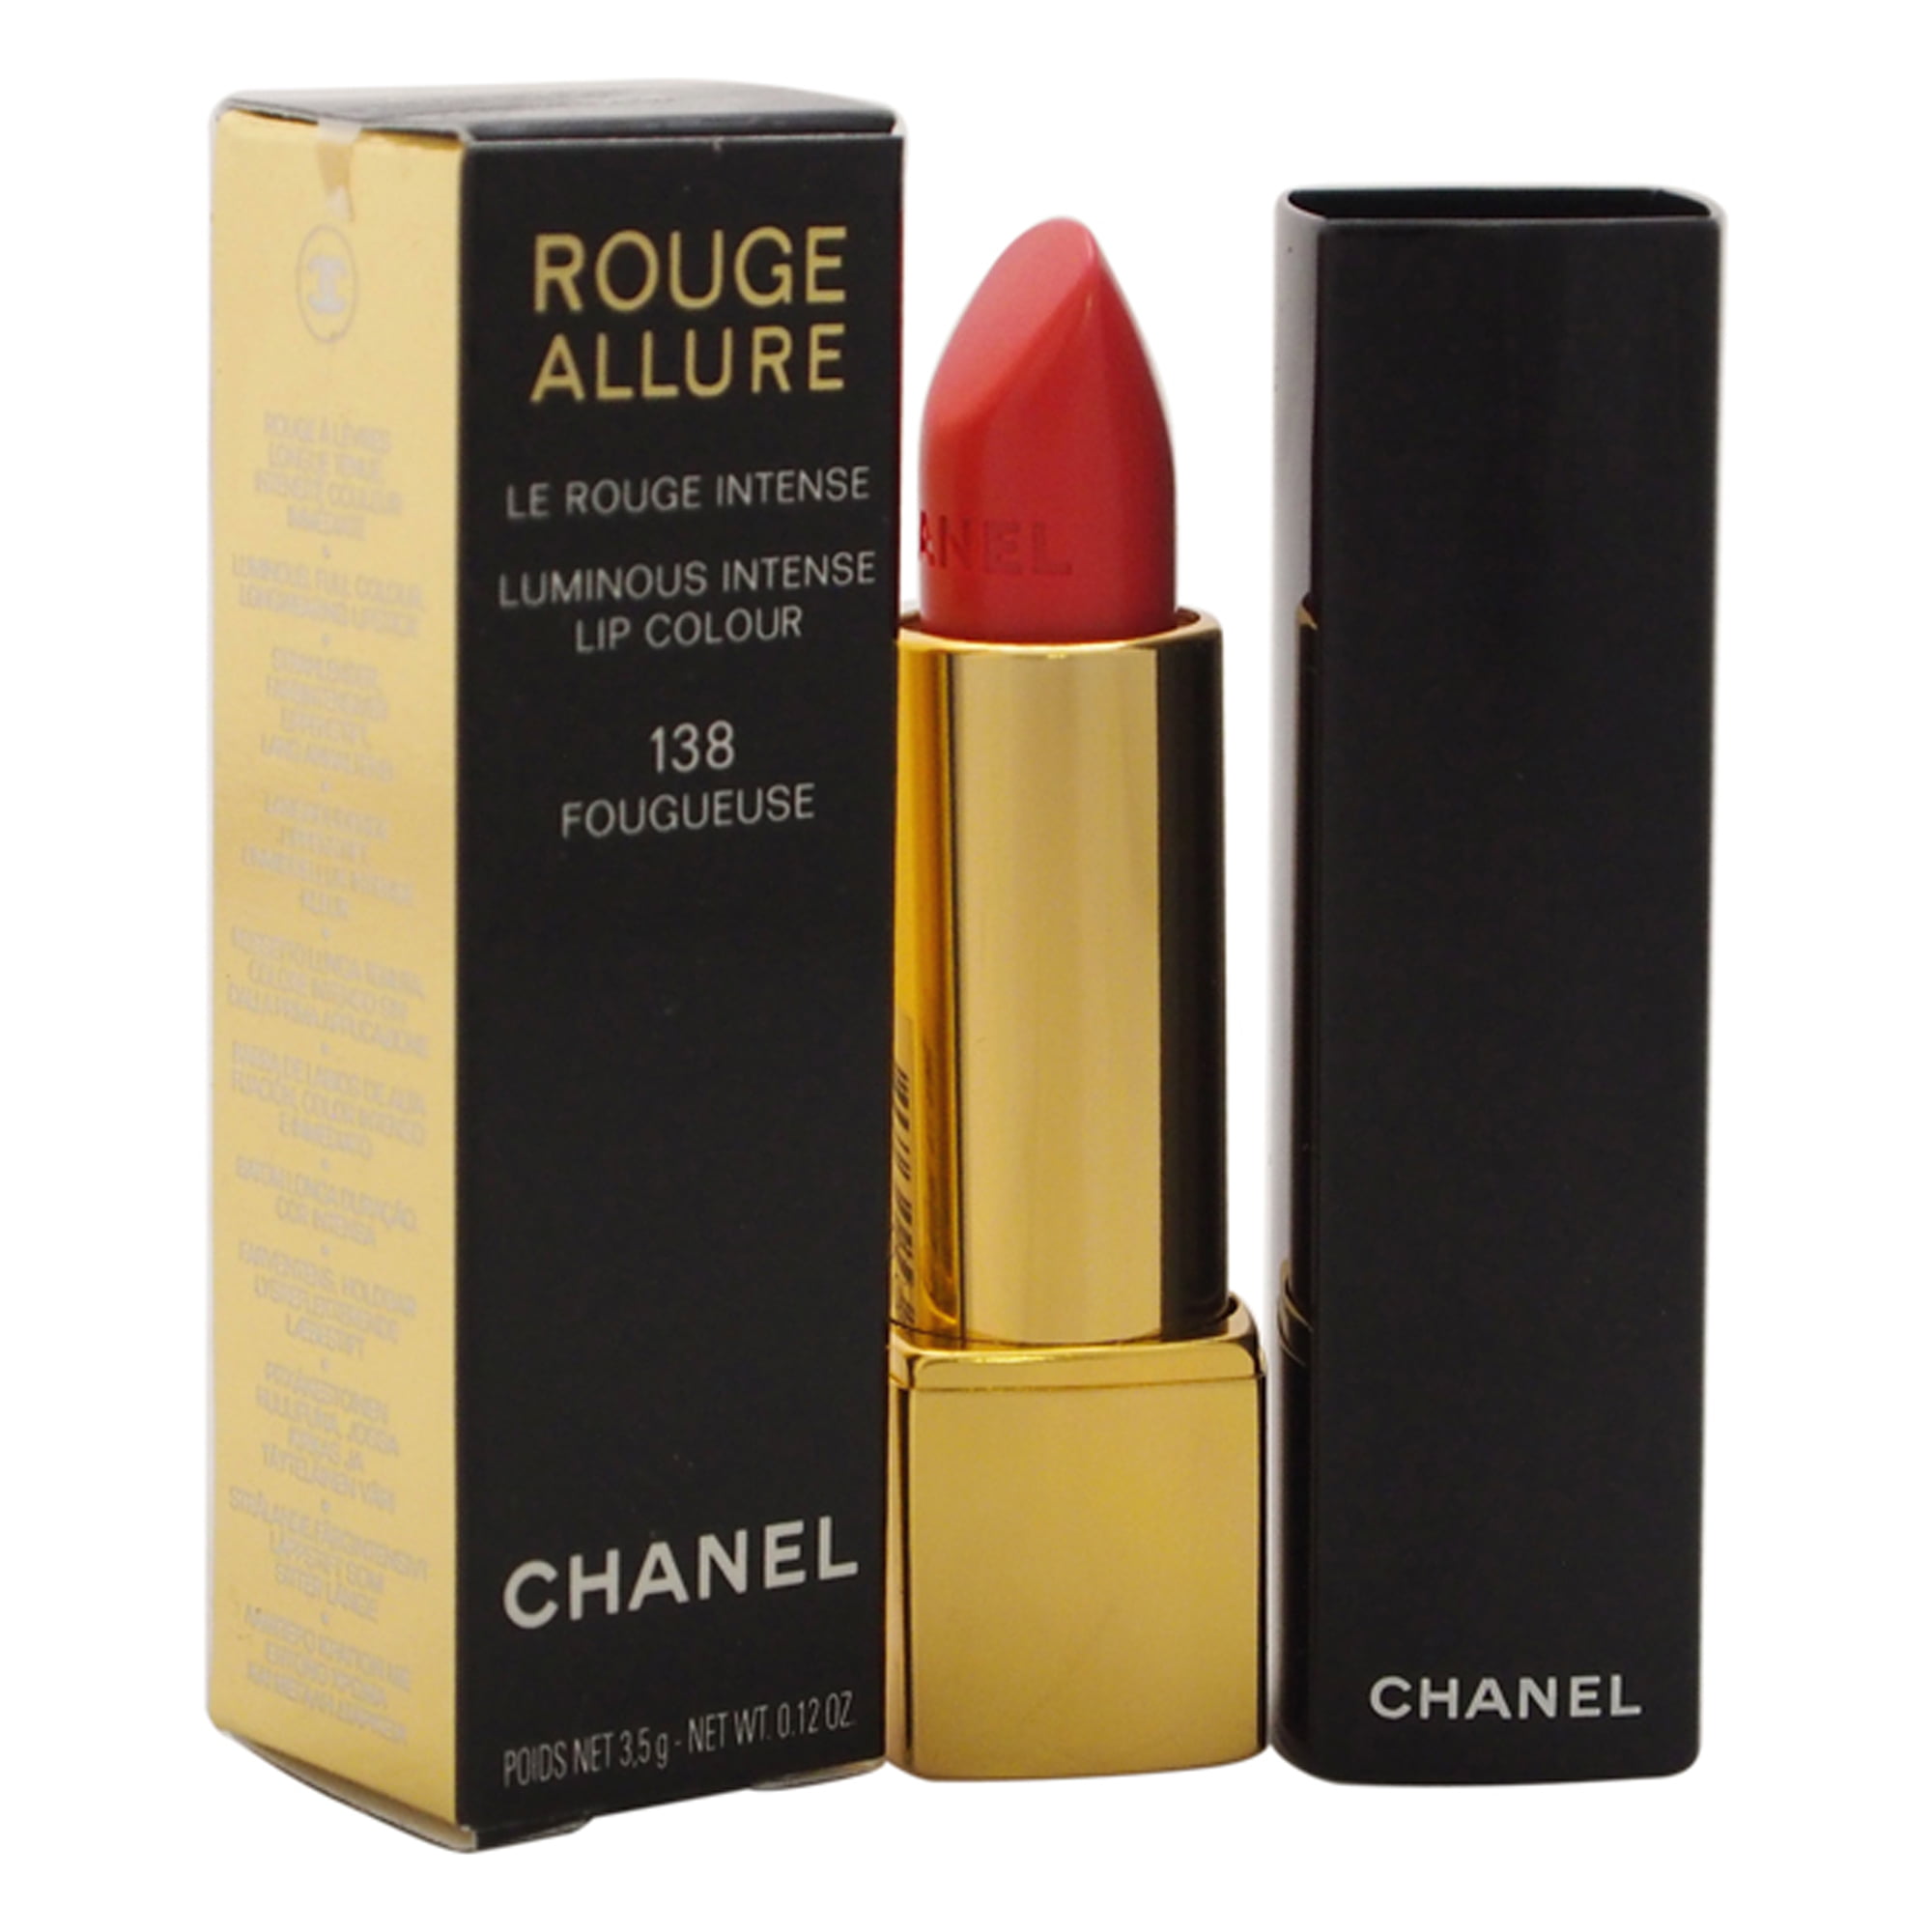 Chanel Rouge Allure Luminous Intense Lip Colour, # 138 Fougueuse